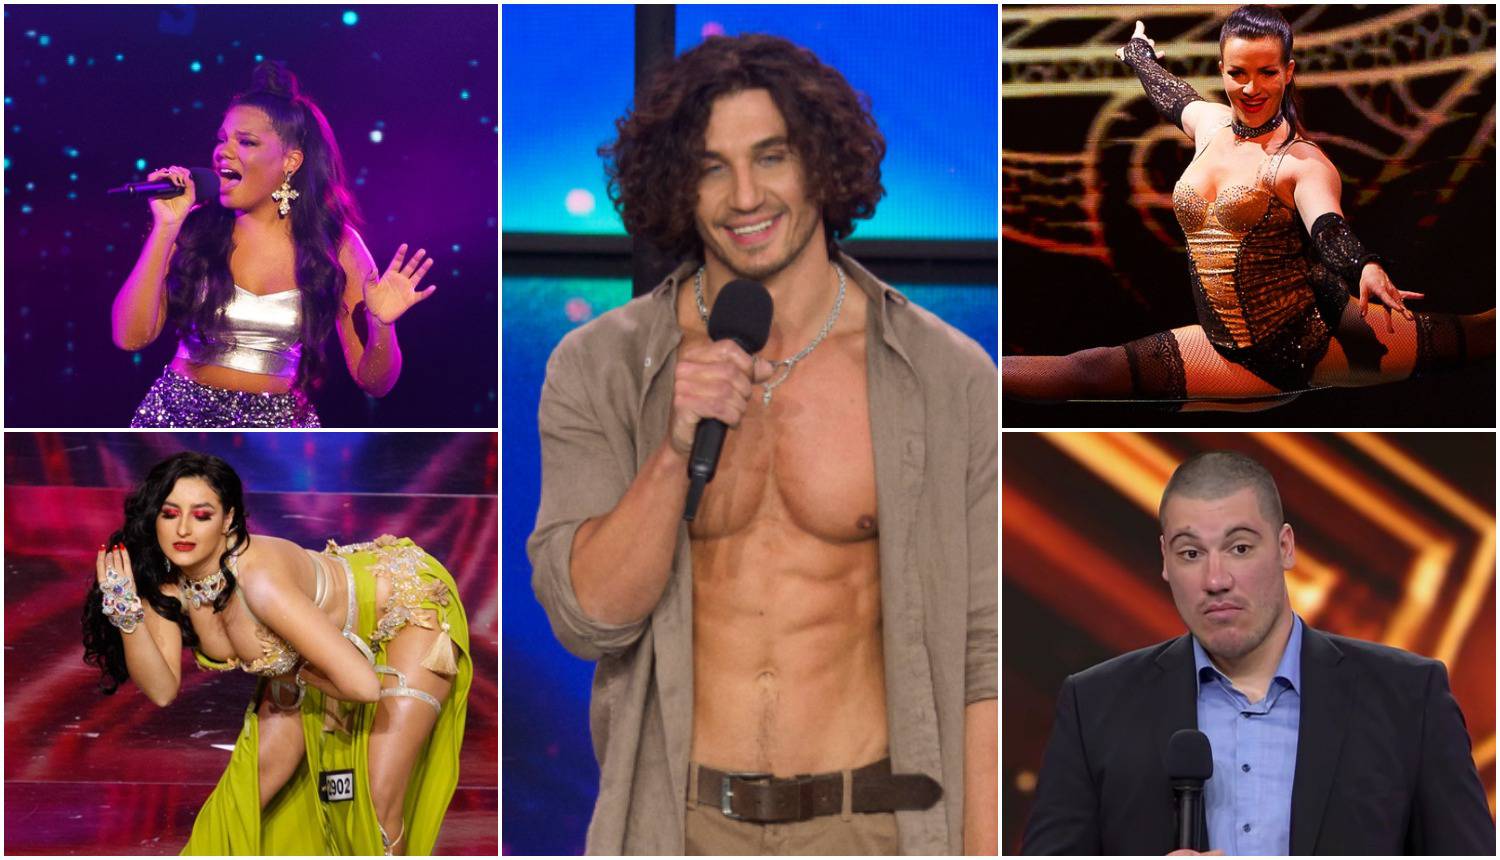 ANKETA U 'Supertalentu' se večeras za pobjedu natječe 12 finalista, tko je vaš favorit?